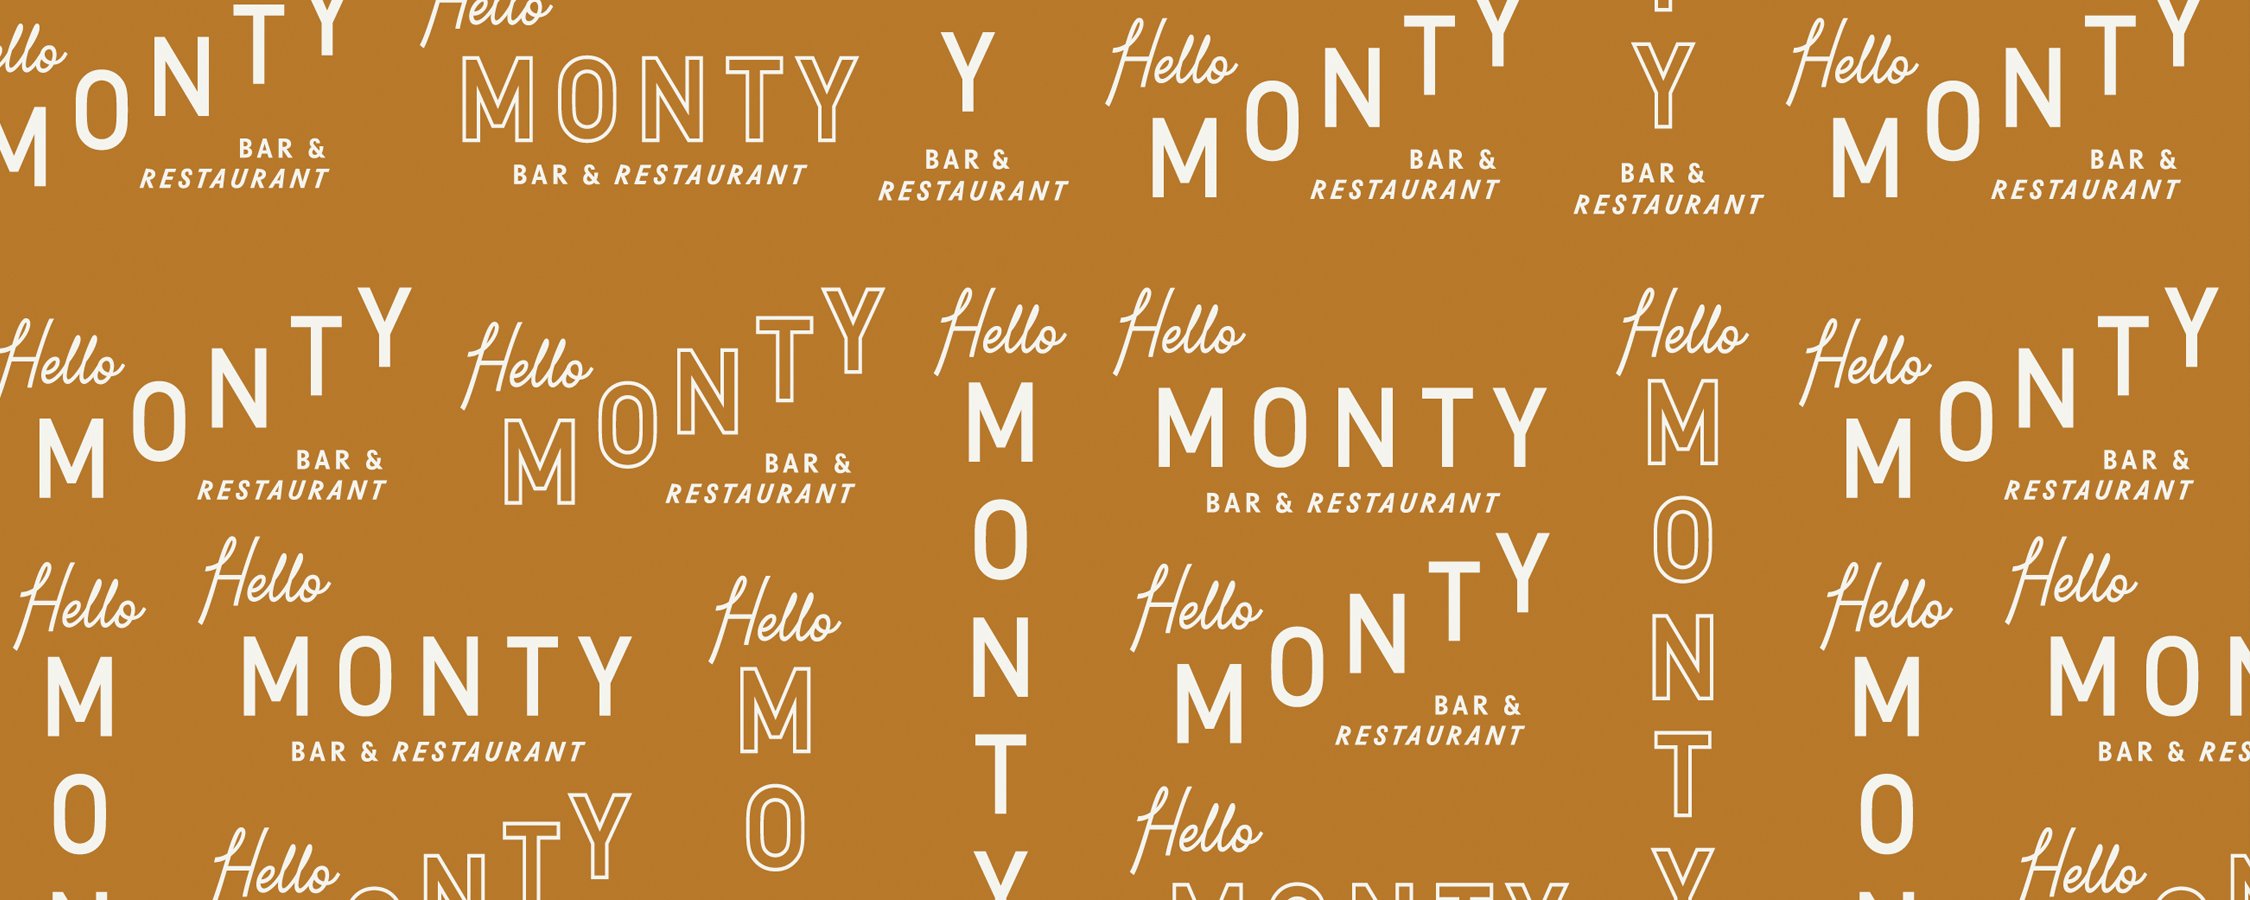 HelloMonty-Pattern.jpg